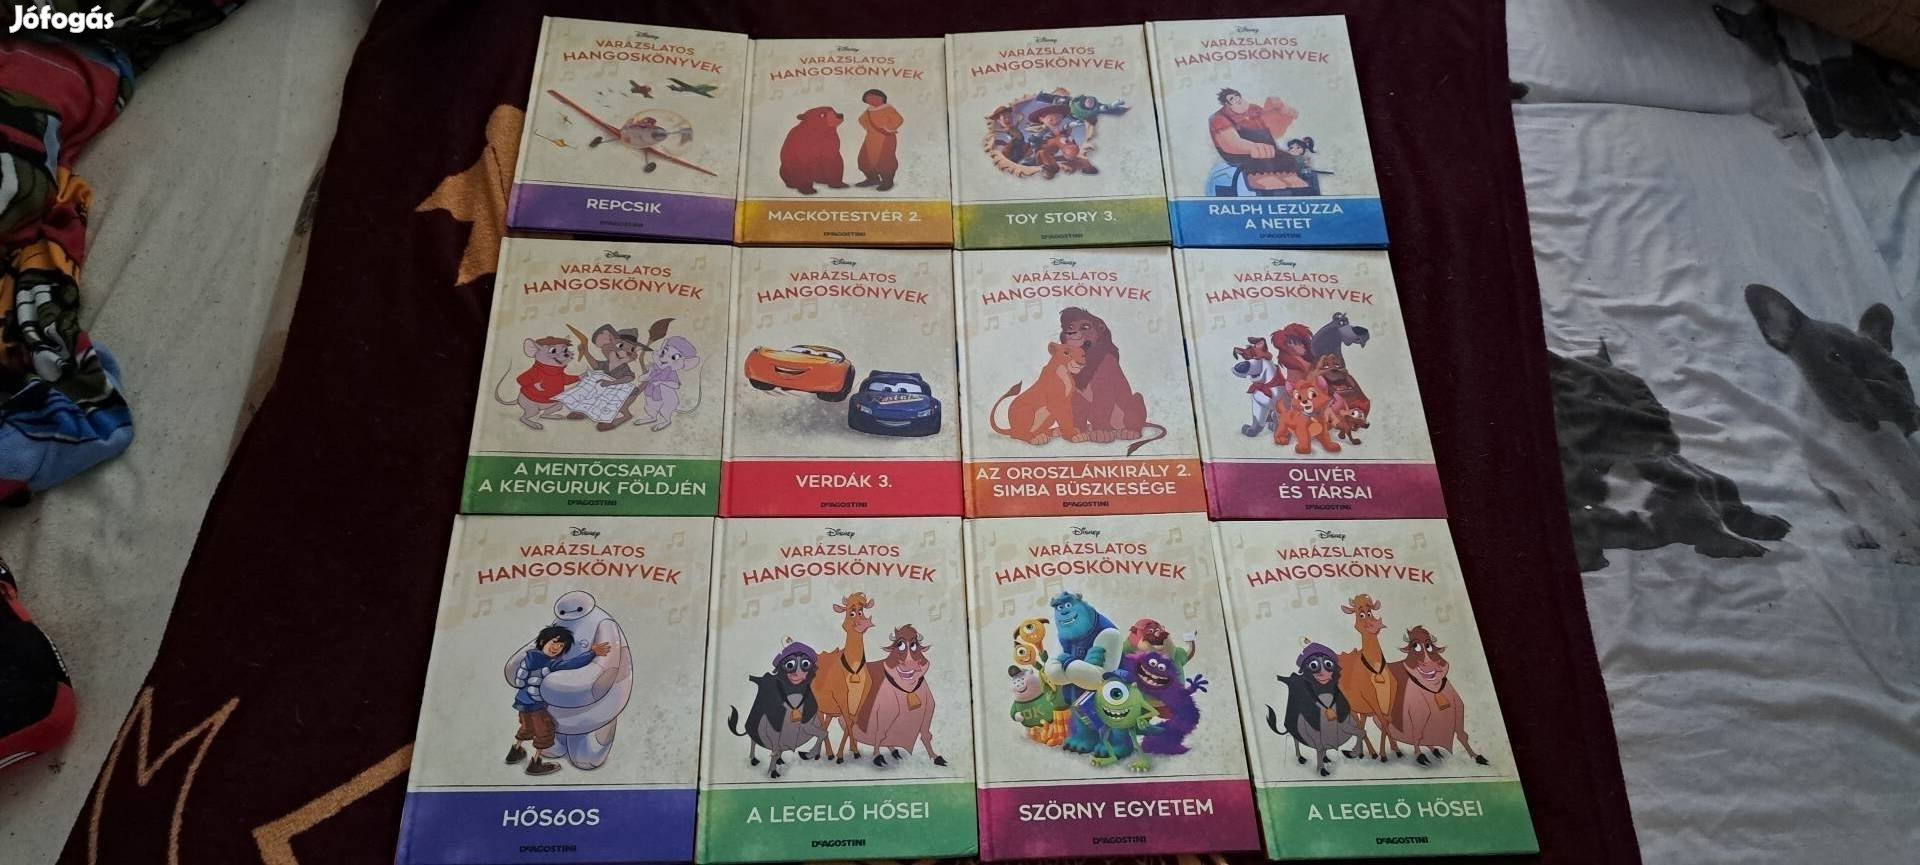 Disney-s hangoskönyvek